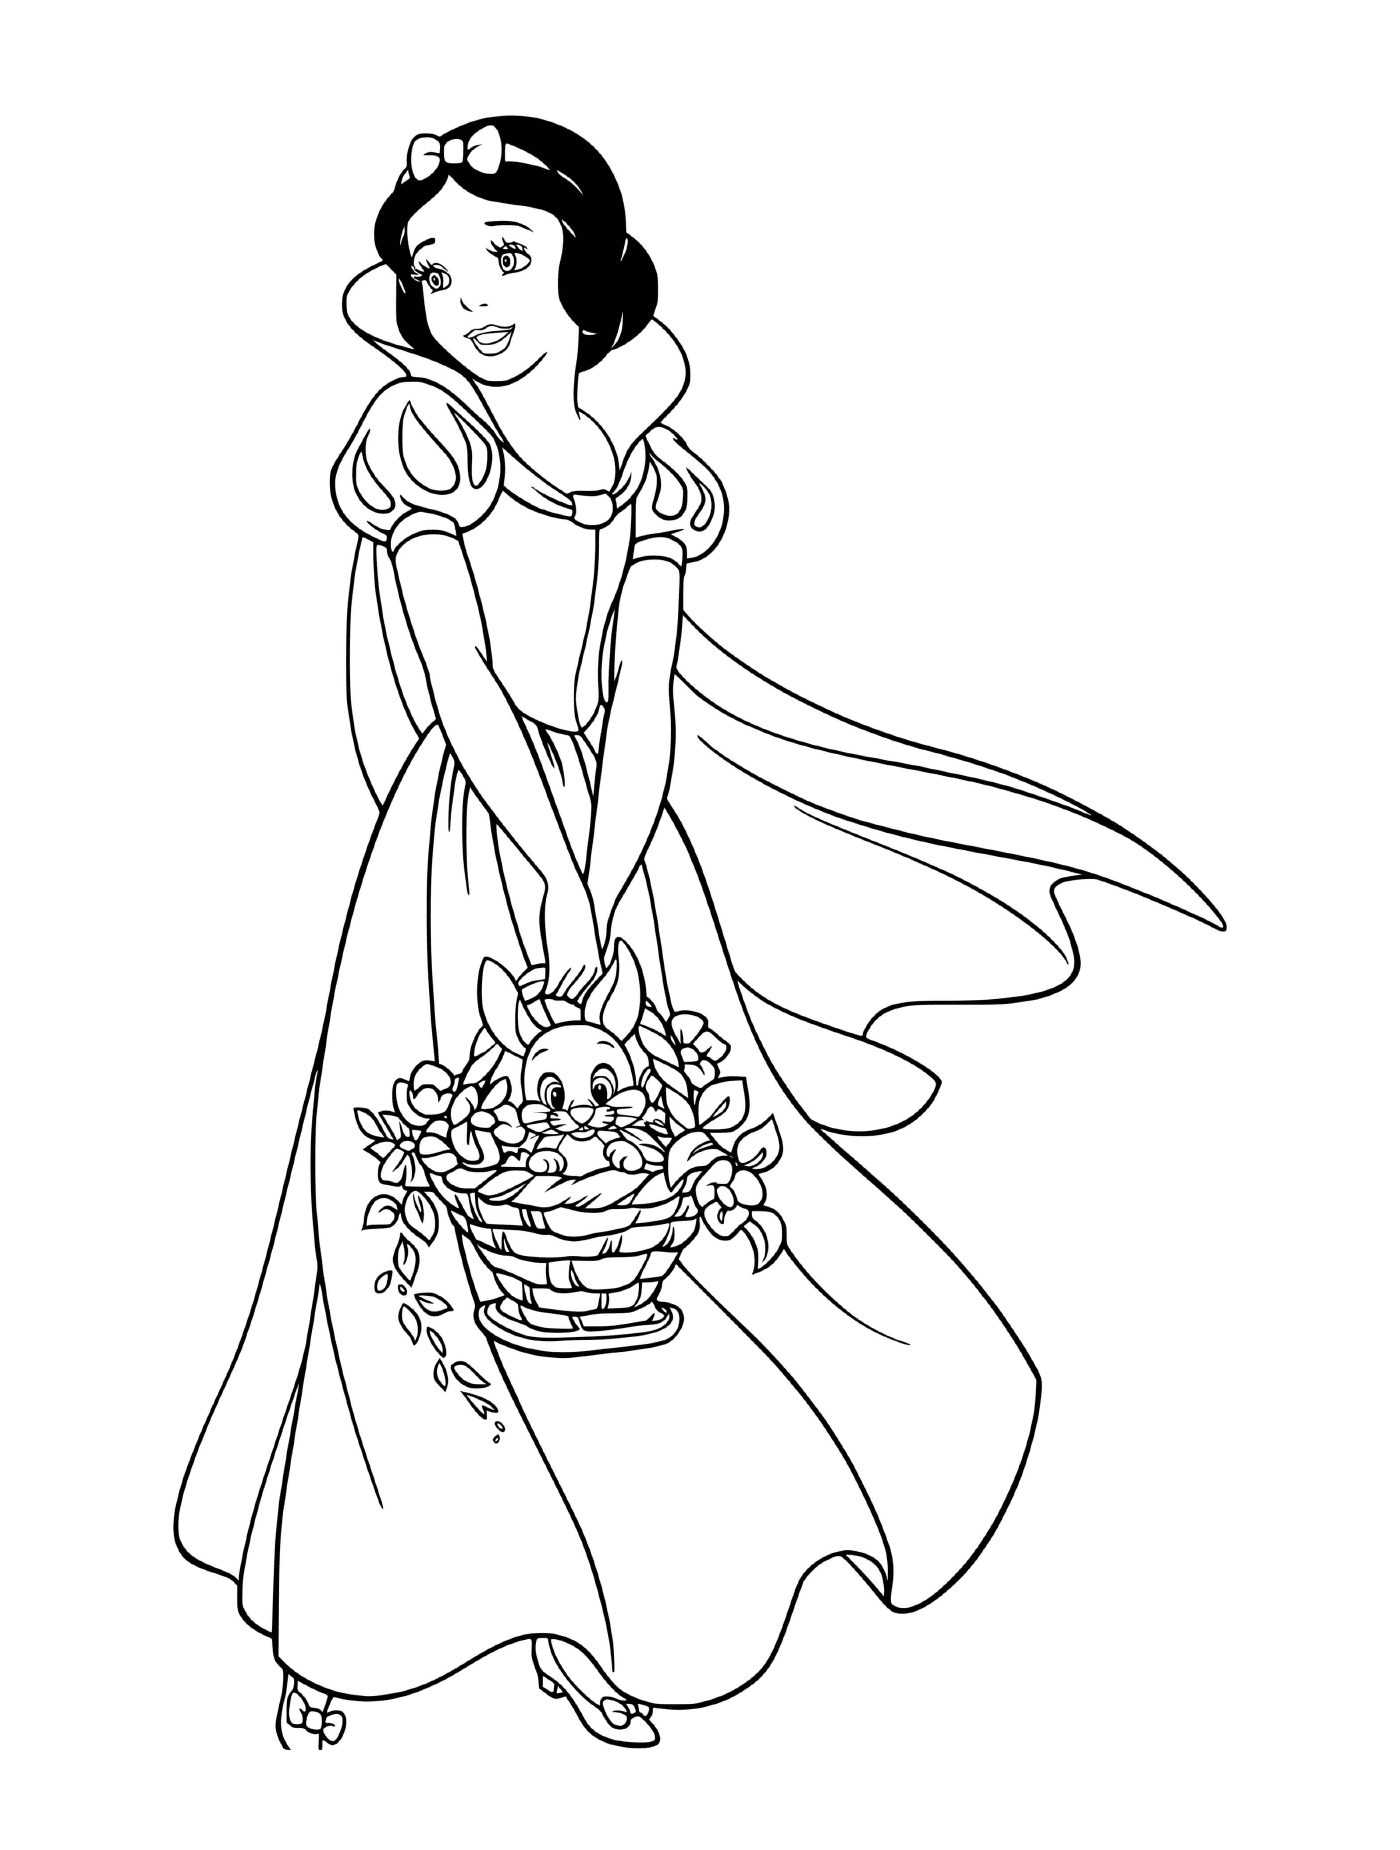  राजकुमारी बर्फ सफेद में फूलों की टोकरी को थामे हुए 